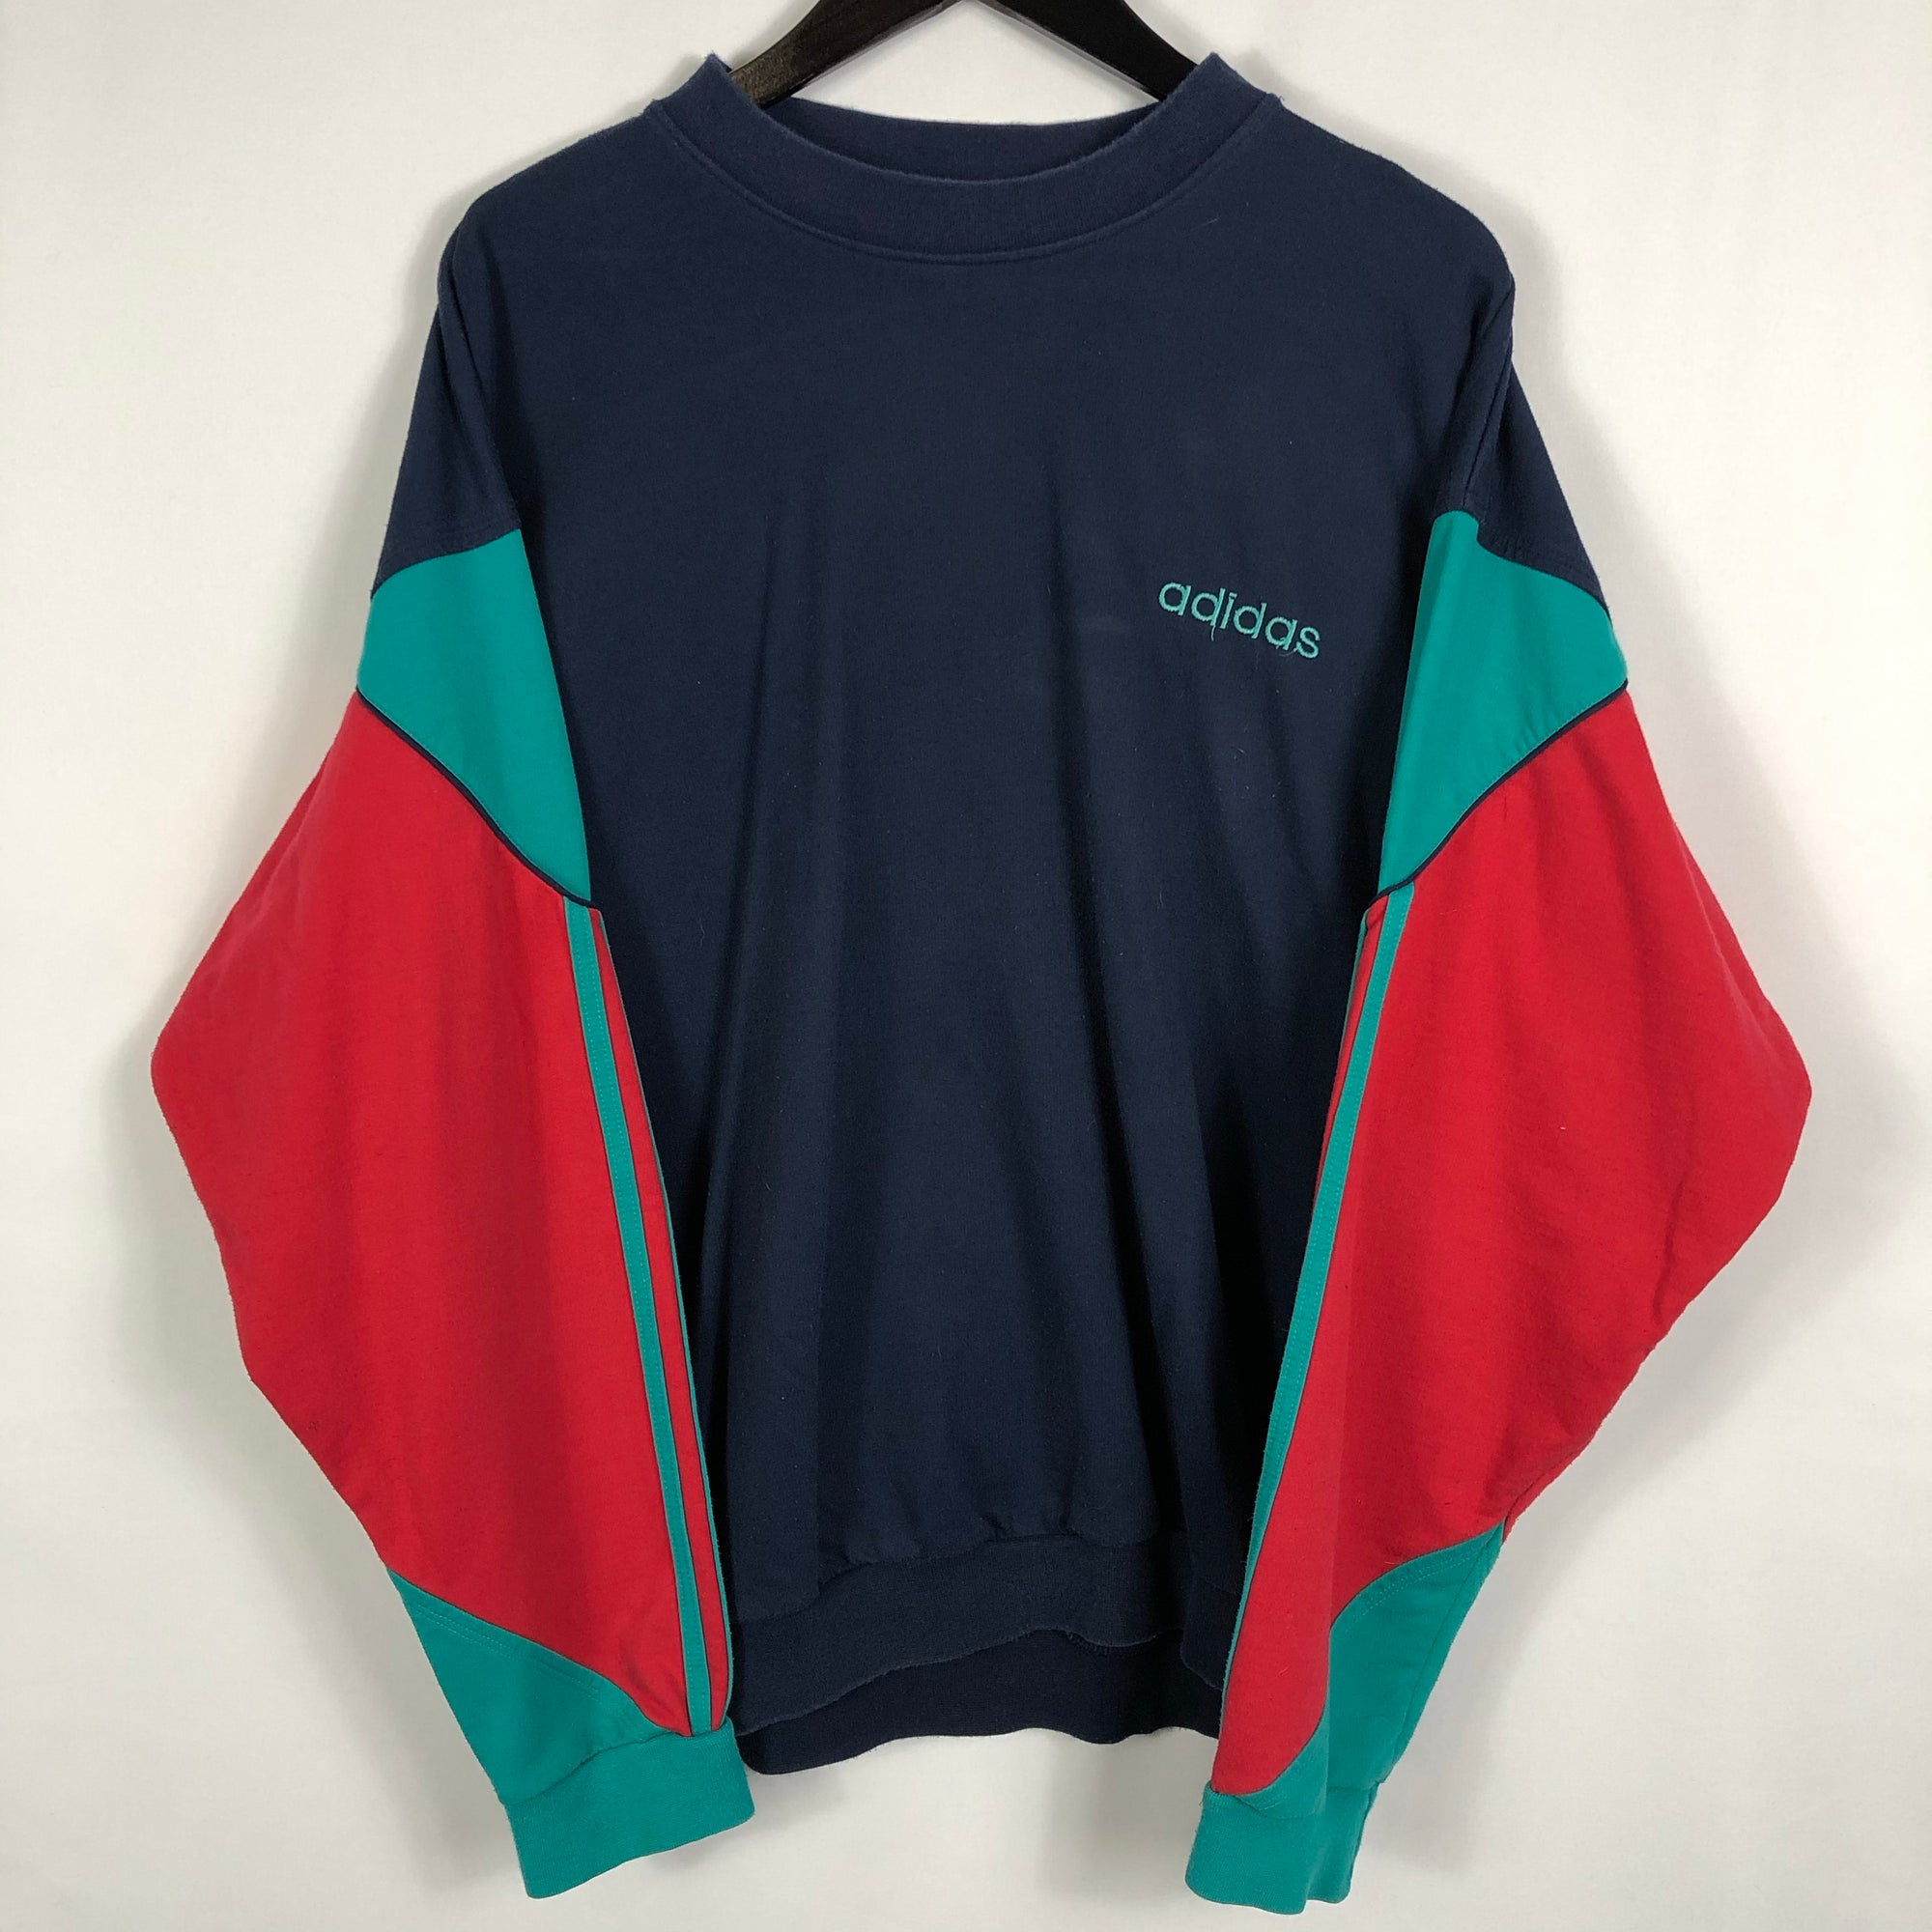 Vintage Adidas Tri-Colour Sweatshirt - Men’s Large/Women’s XL